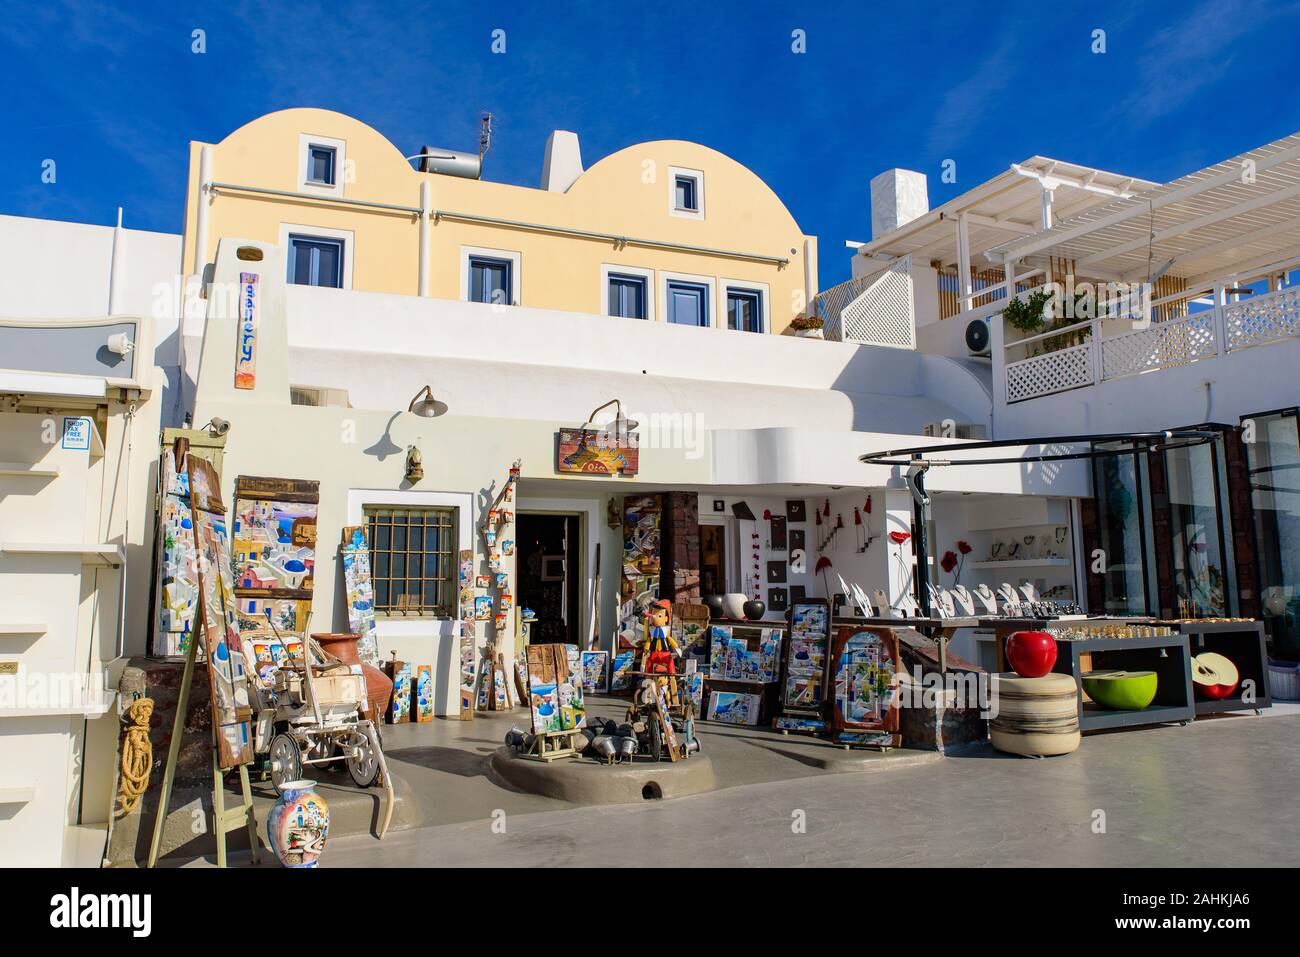 Tienda de souvenirs en Oia, Santorini, Grecia Foto de stock